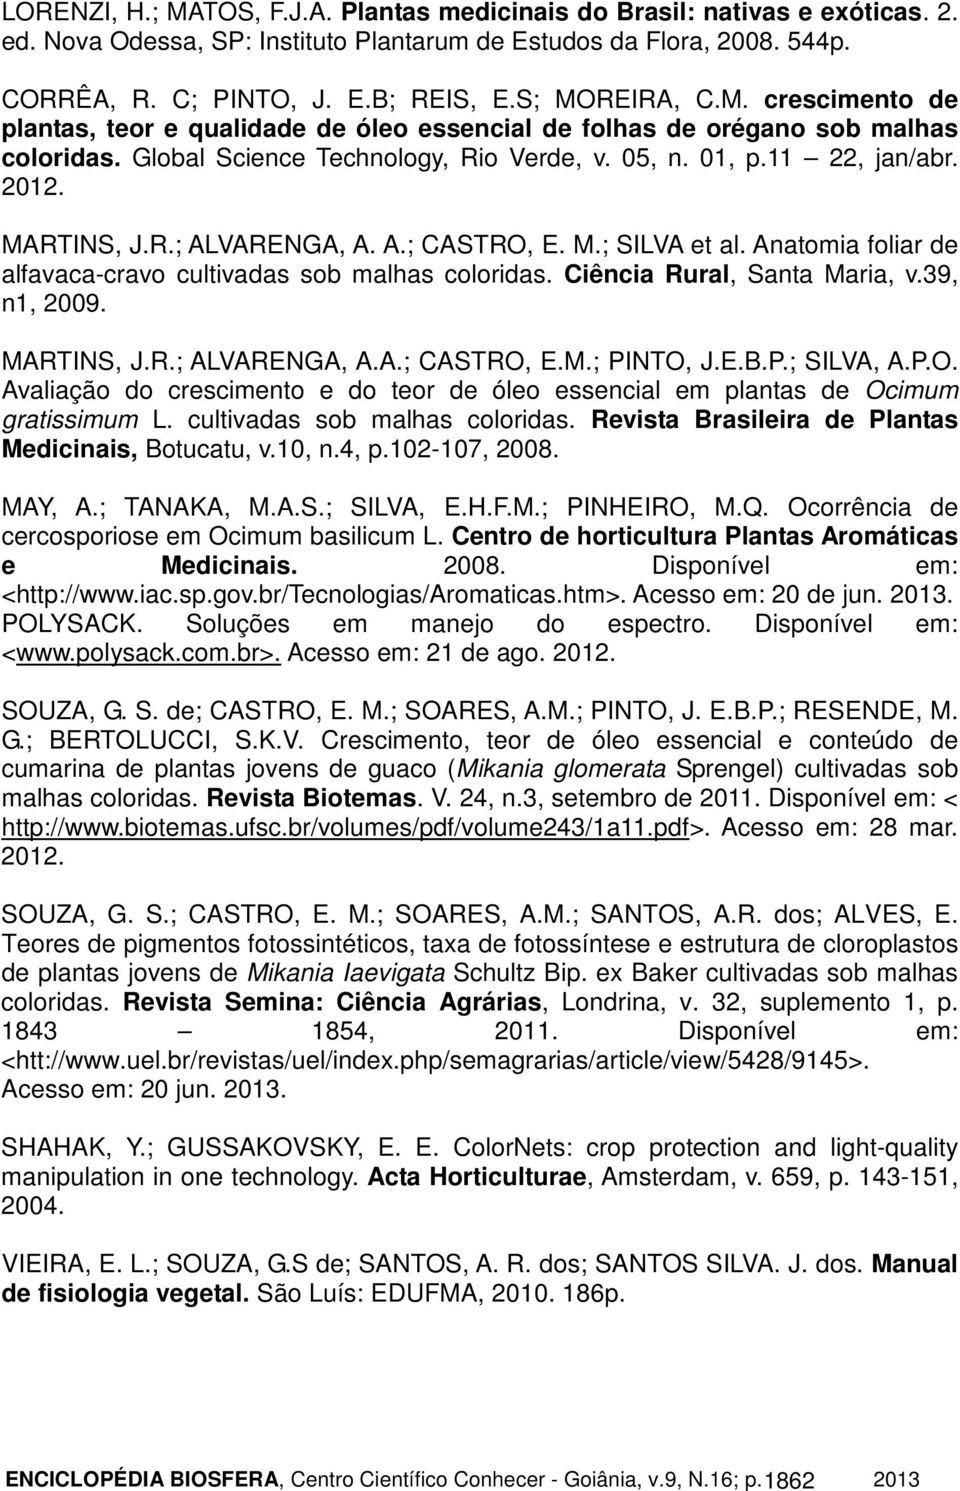 MARTINS, J.R.; ALVARENGA, A. A.; CASTRO, E. M.; SILVA et al. Anatomia foliar de alfavaca-cravo cultivadas sob malhas coloridas. Ciência Rural, Santa Maria, v.39, n1, 2009. MARTINS, J.R.; ALVARENGA, A.A.; CASTRO, E.M.; PINTO, J.